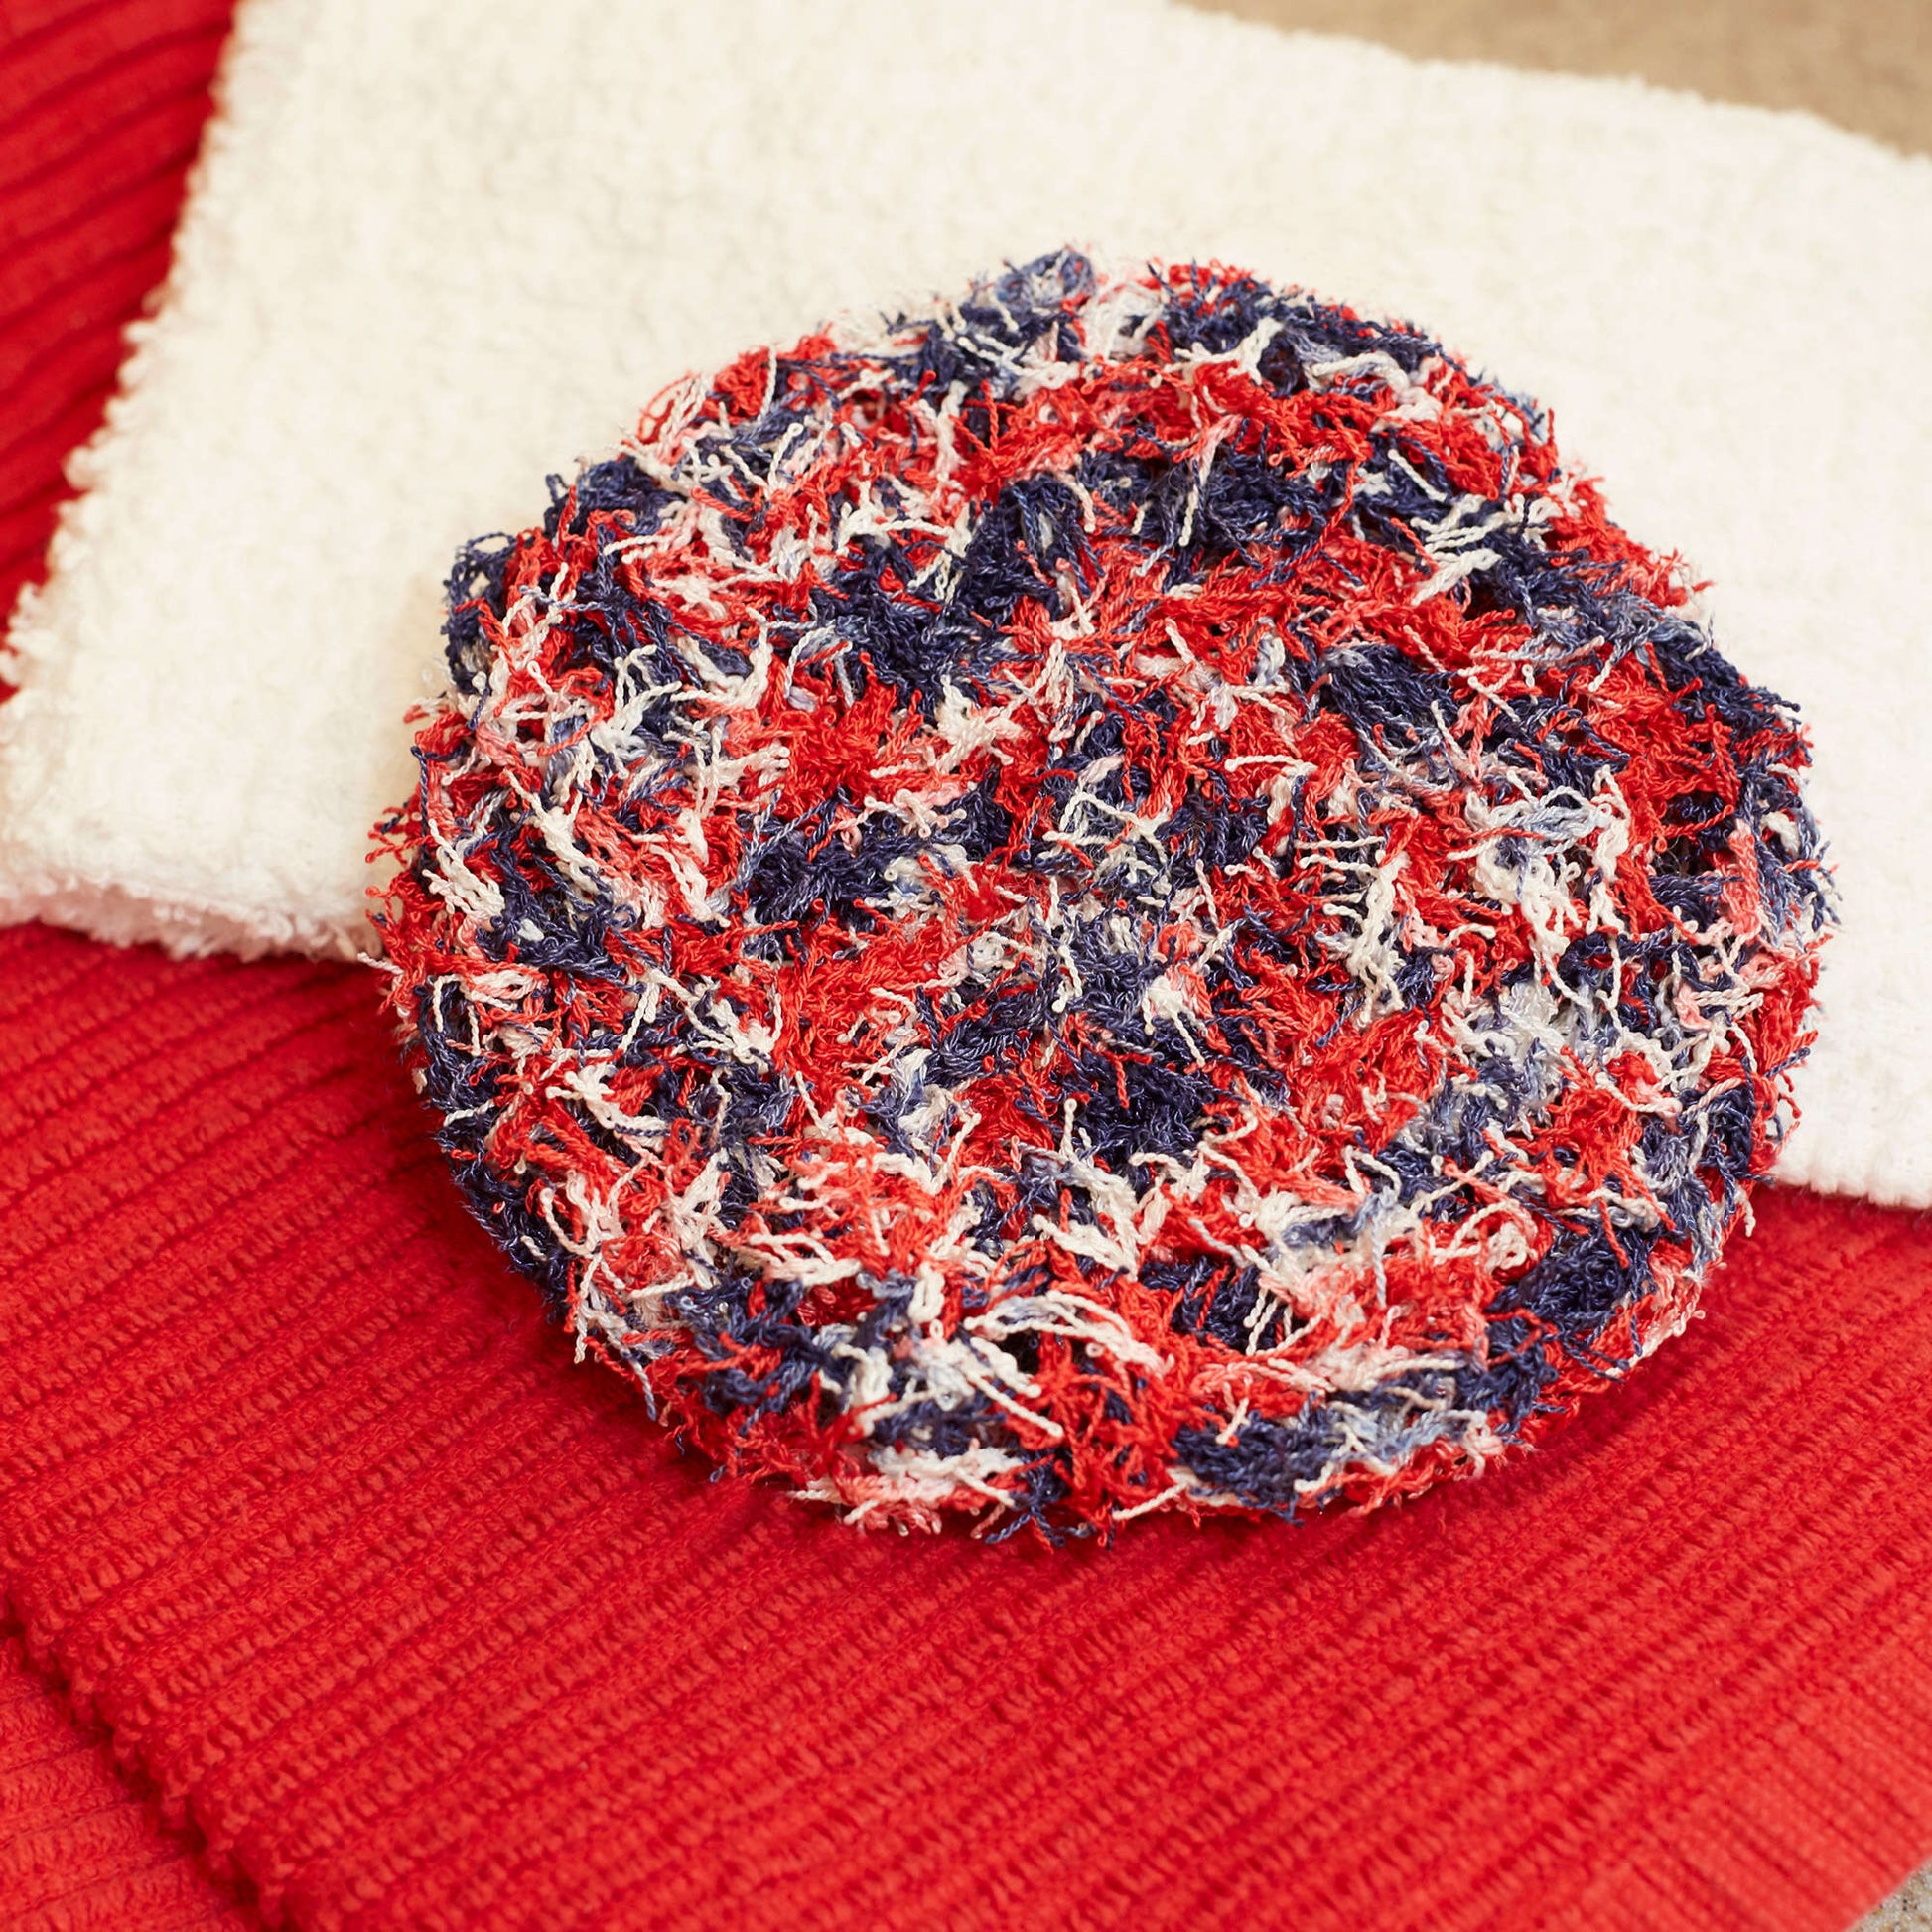 Free Red Heart Crochet Swirl Scrubby Pattern